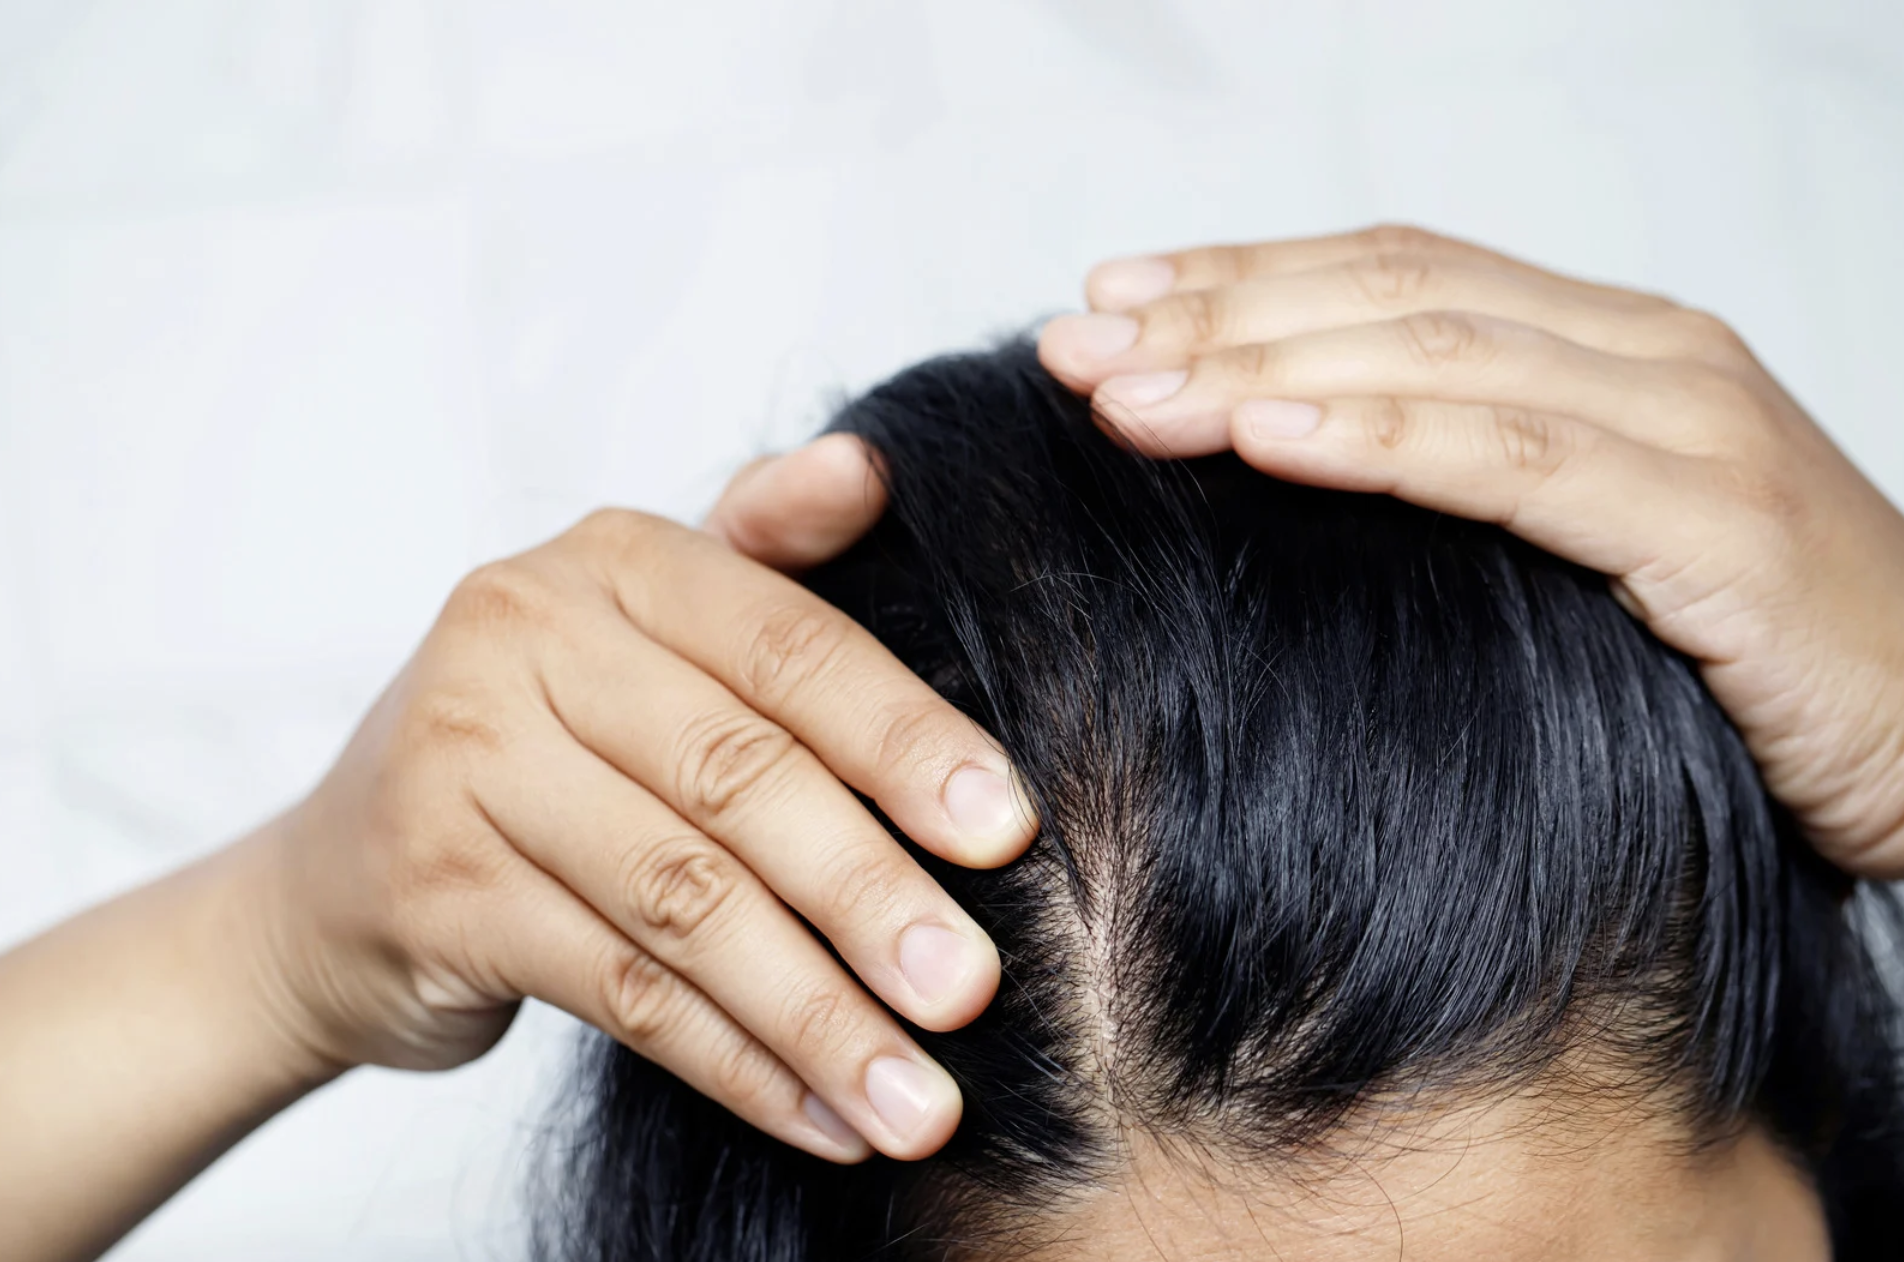 Will menopausal hair loss grow back? - 23MD